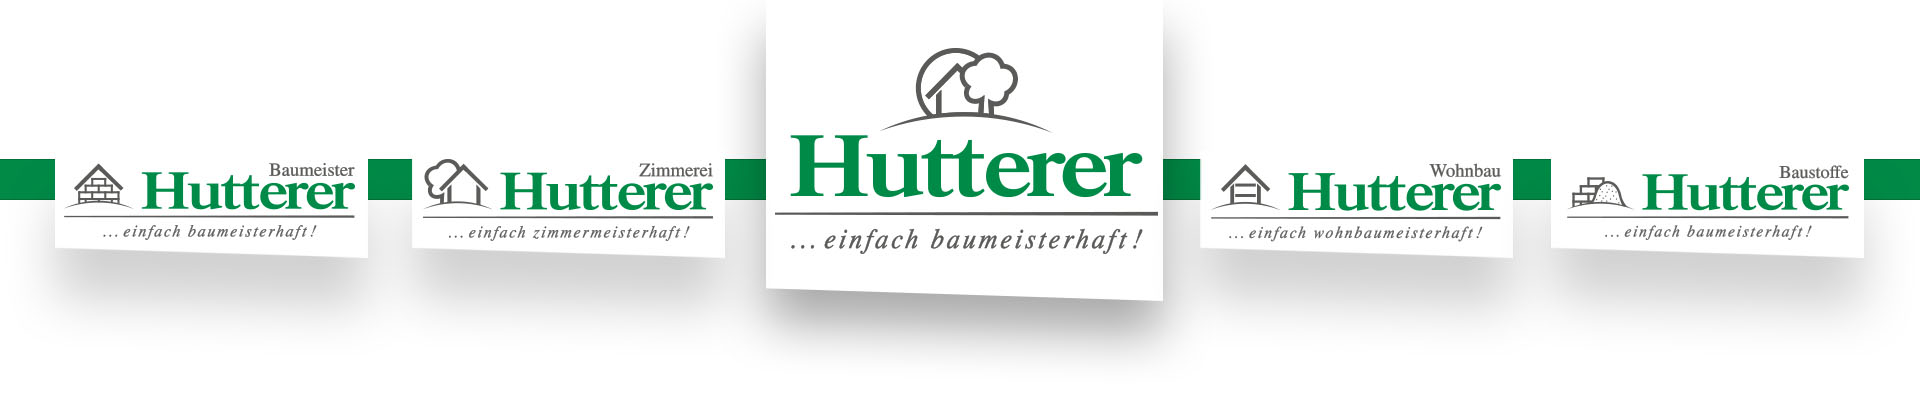 Ein Banner, der alle Logos der einzelen Hutterer-Sparten darstellt